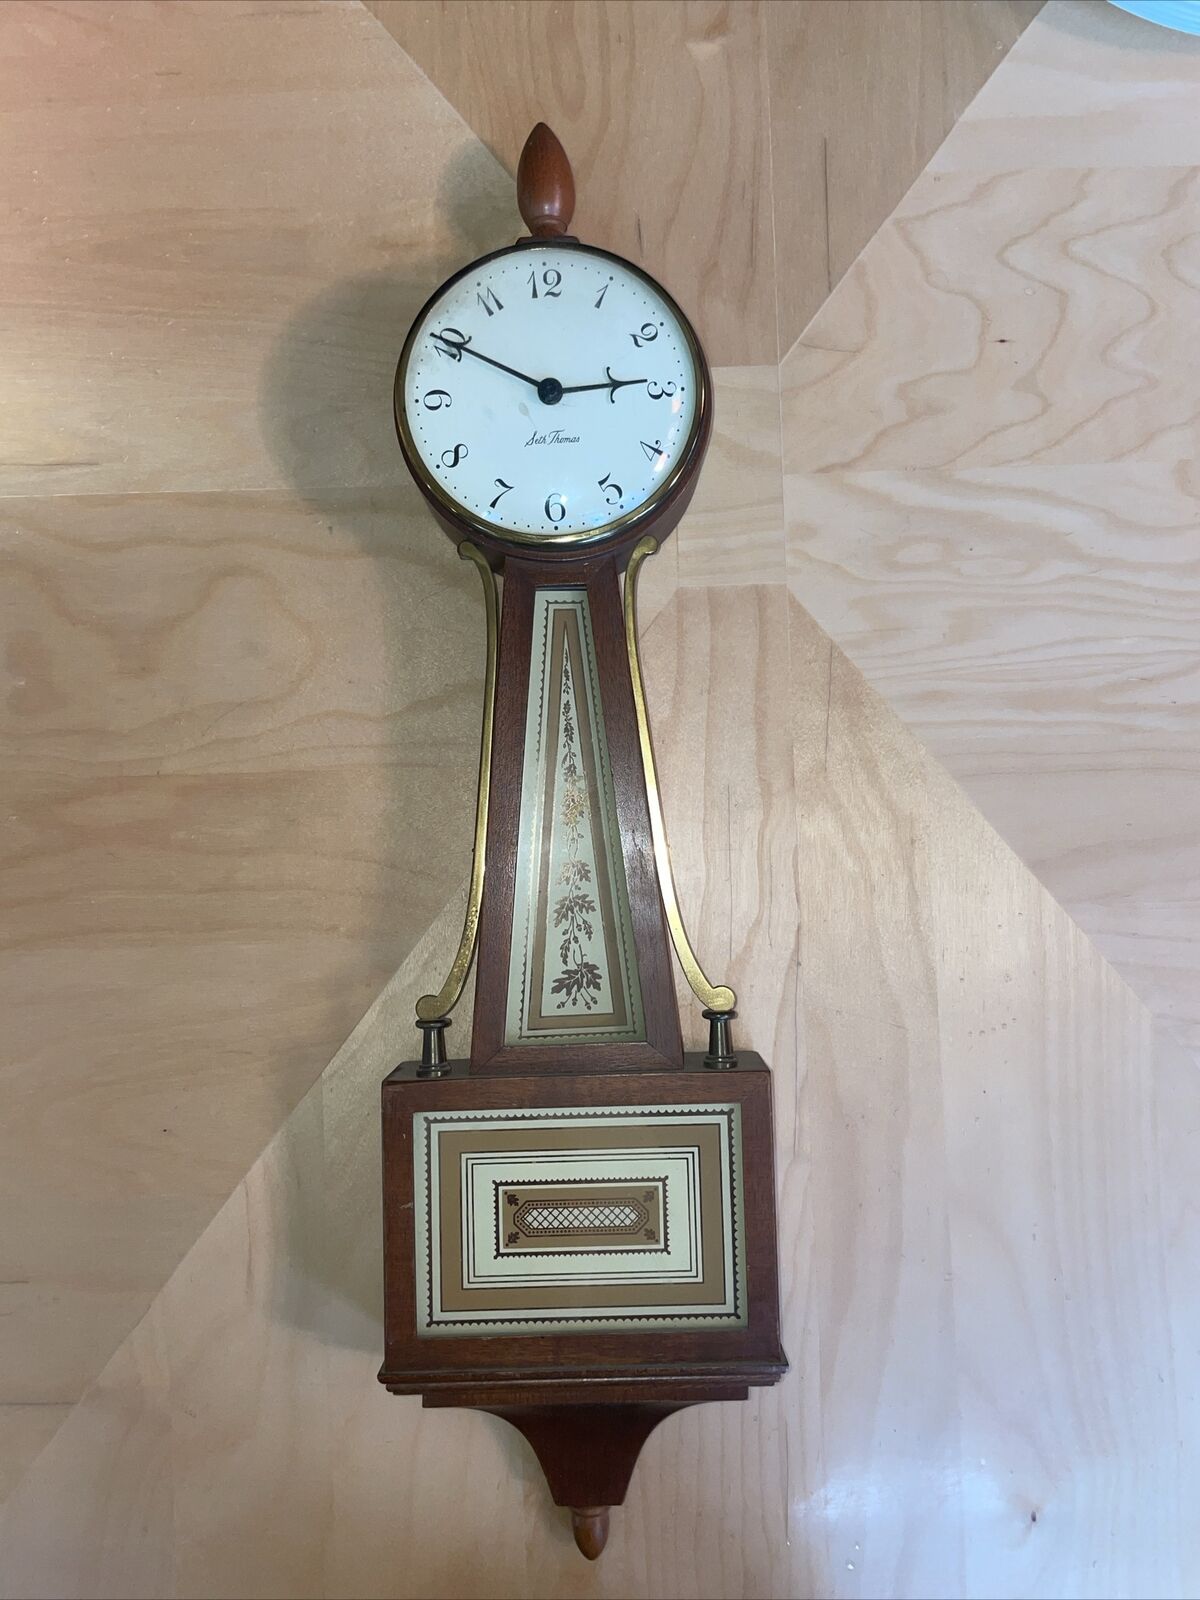 Vintage Seth Thomas Banjo Wall Clock German Jeweled Movement For REPAIR /PARTS